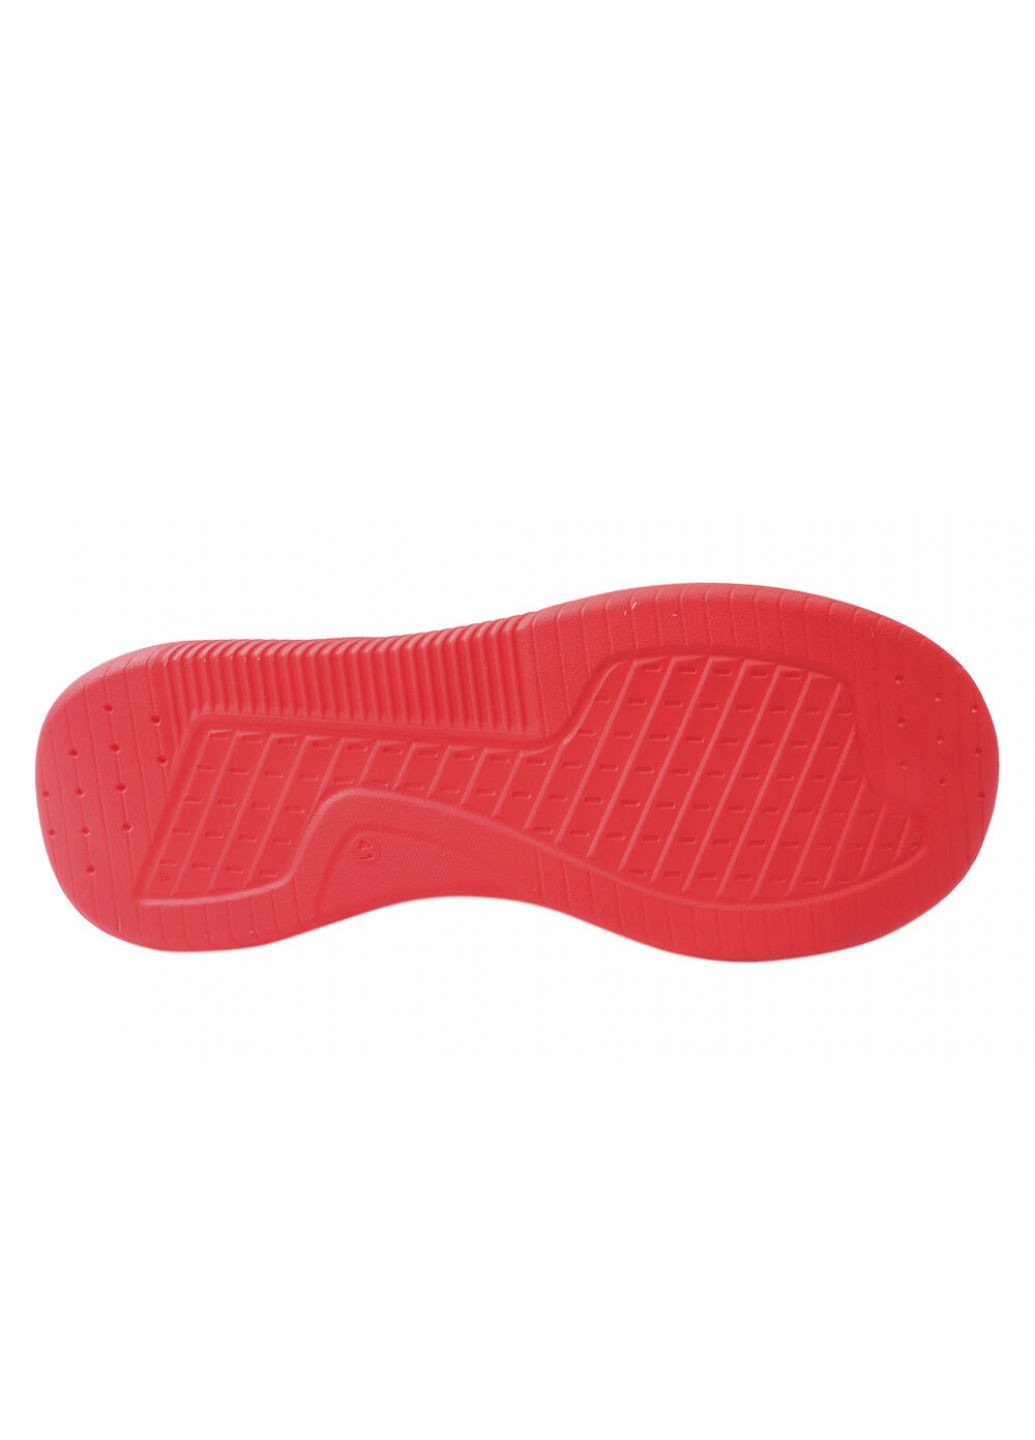 Червоні кросівки чоловічі з натуральної шкіри, на низькому ходу, на шнурівці, колір червоний, україна MDK 26-21DTS